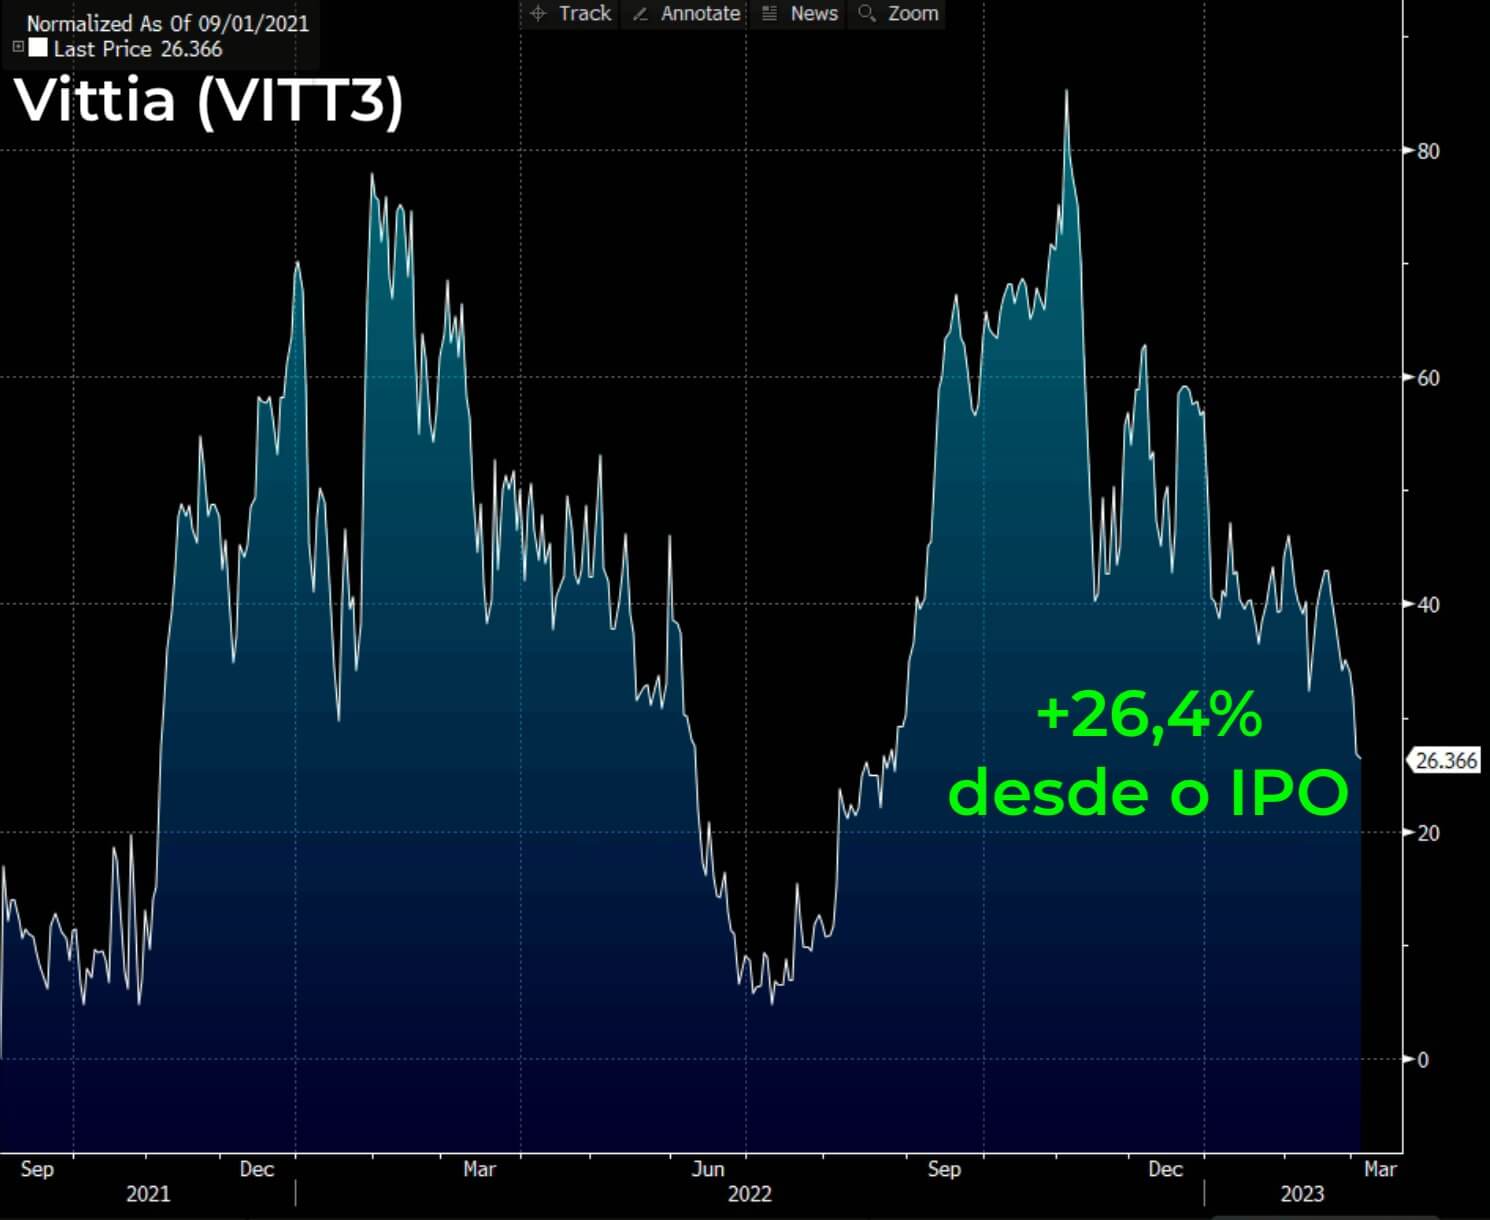 Gráfico mostra valorização das ações da Vittia desde o IPO, alta de 26,4%